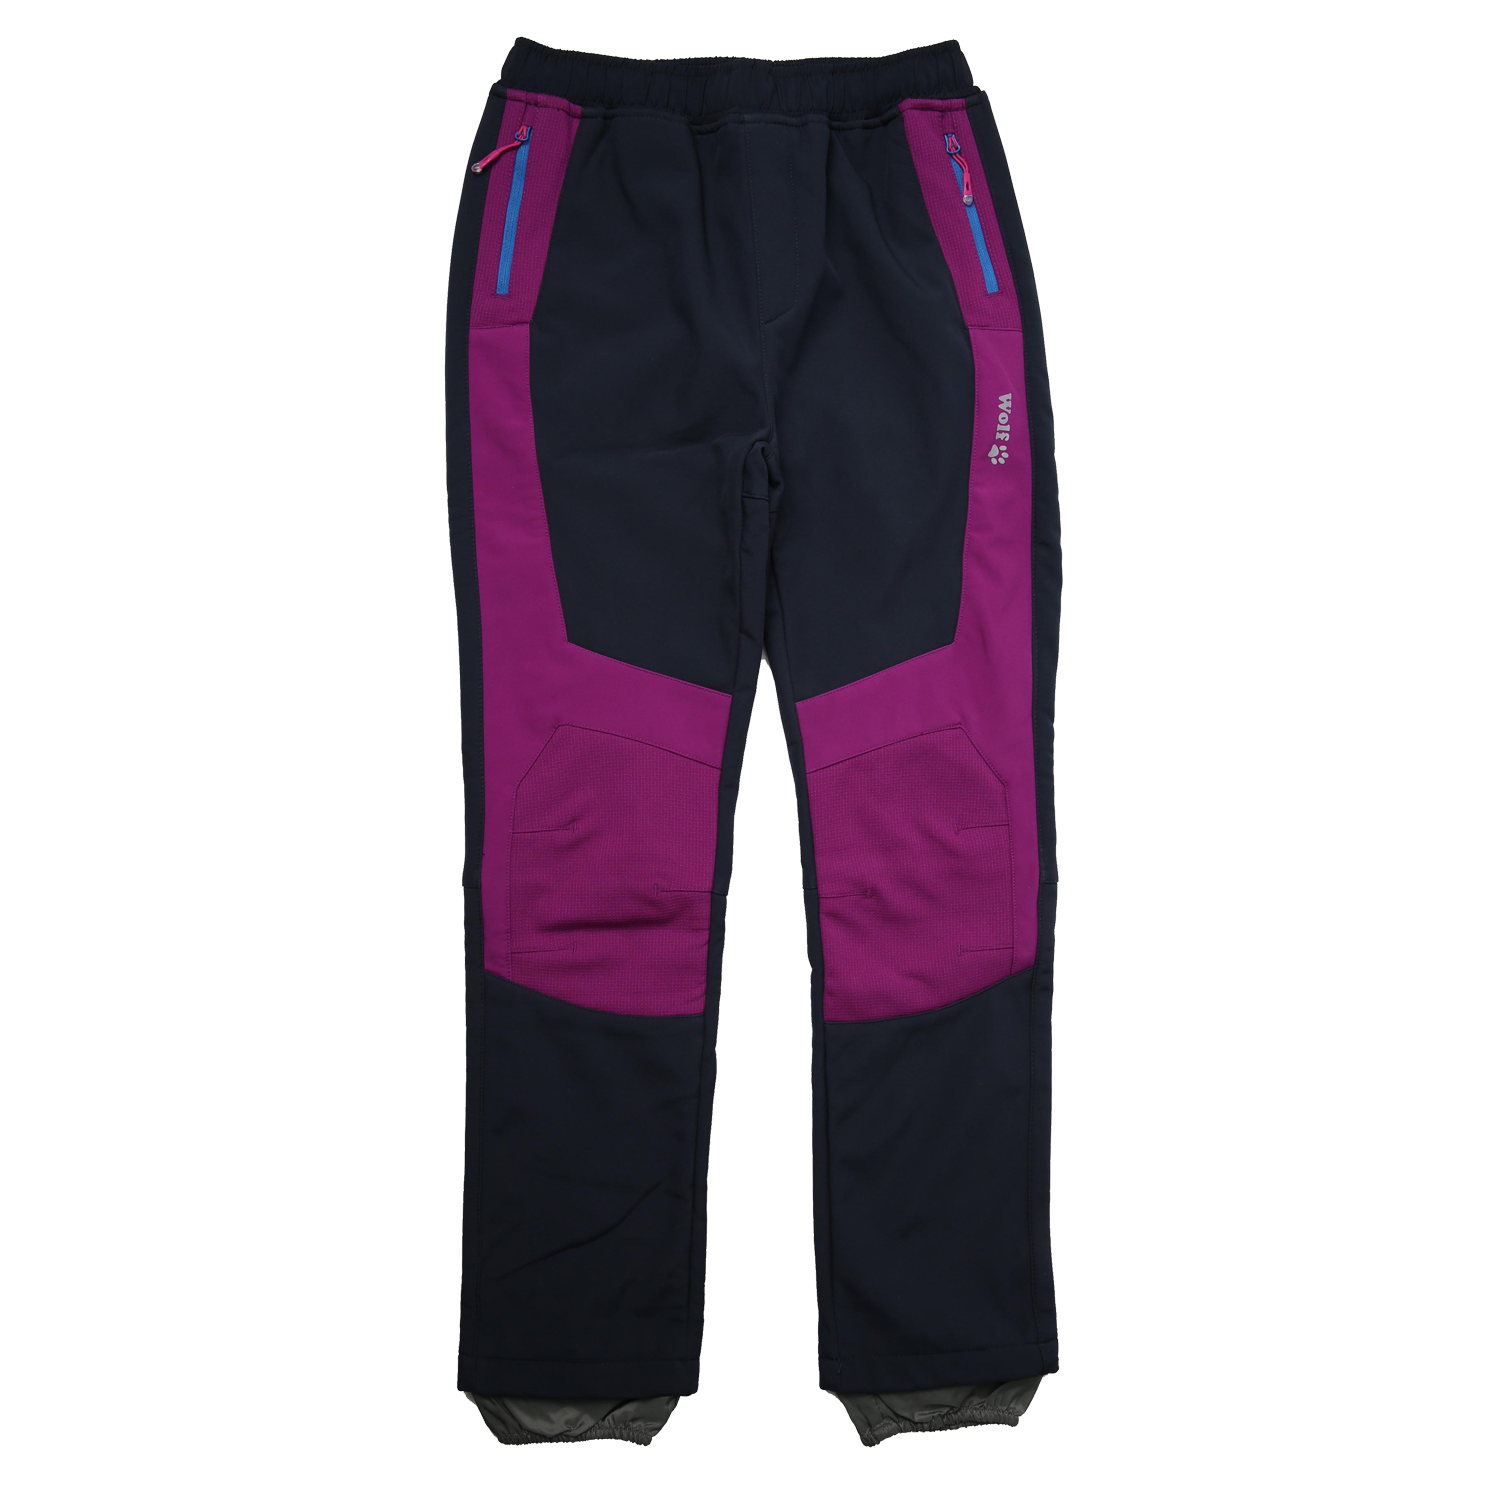 Dívčí softshellové kalhoty, zateplené - Wolf B2295, tmavě modrá/ fialovorůžová Barva: Modrá tmavě, Velikost: 128